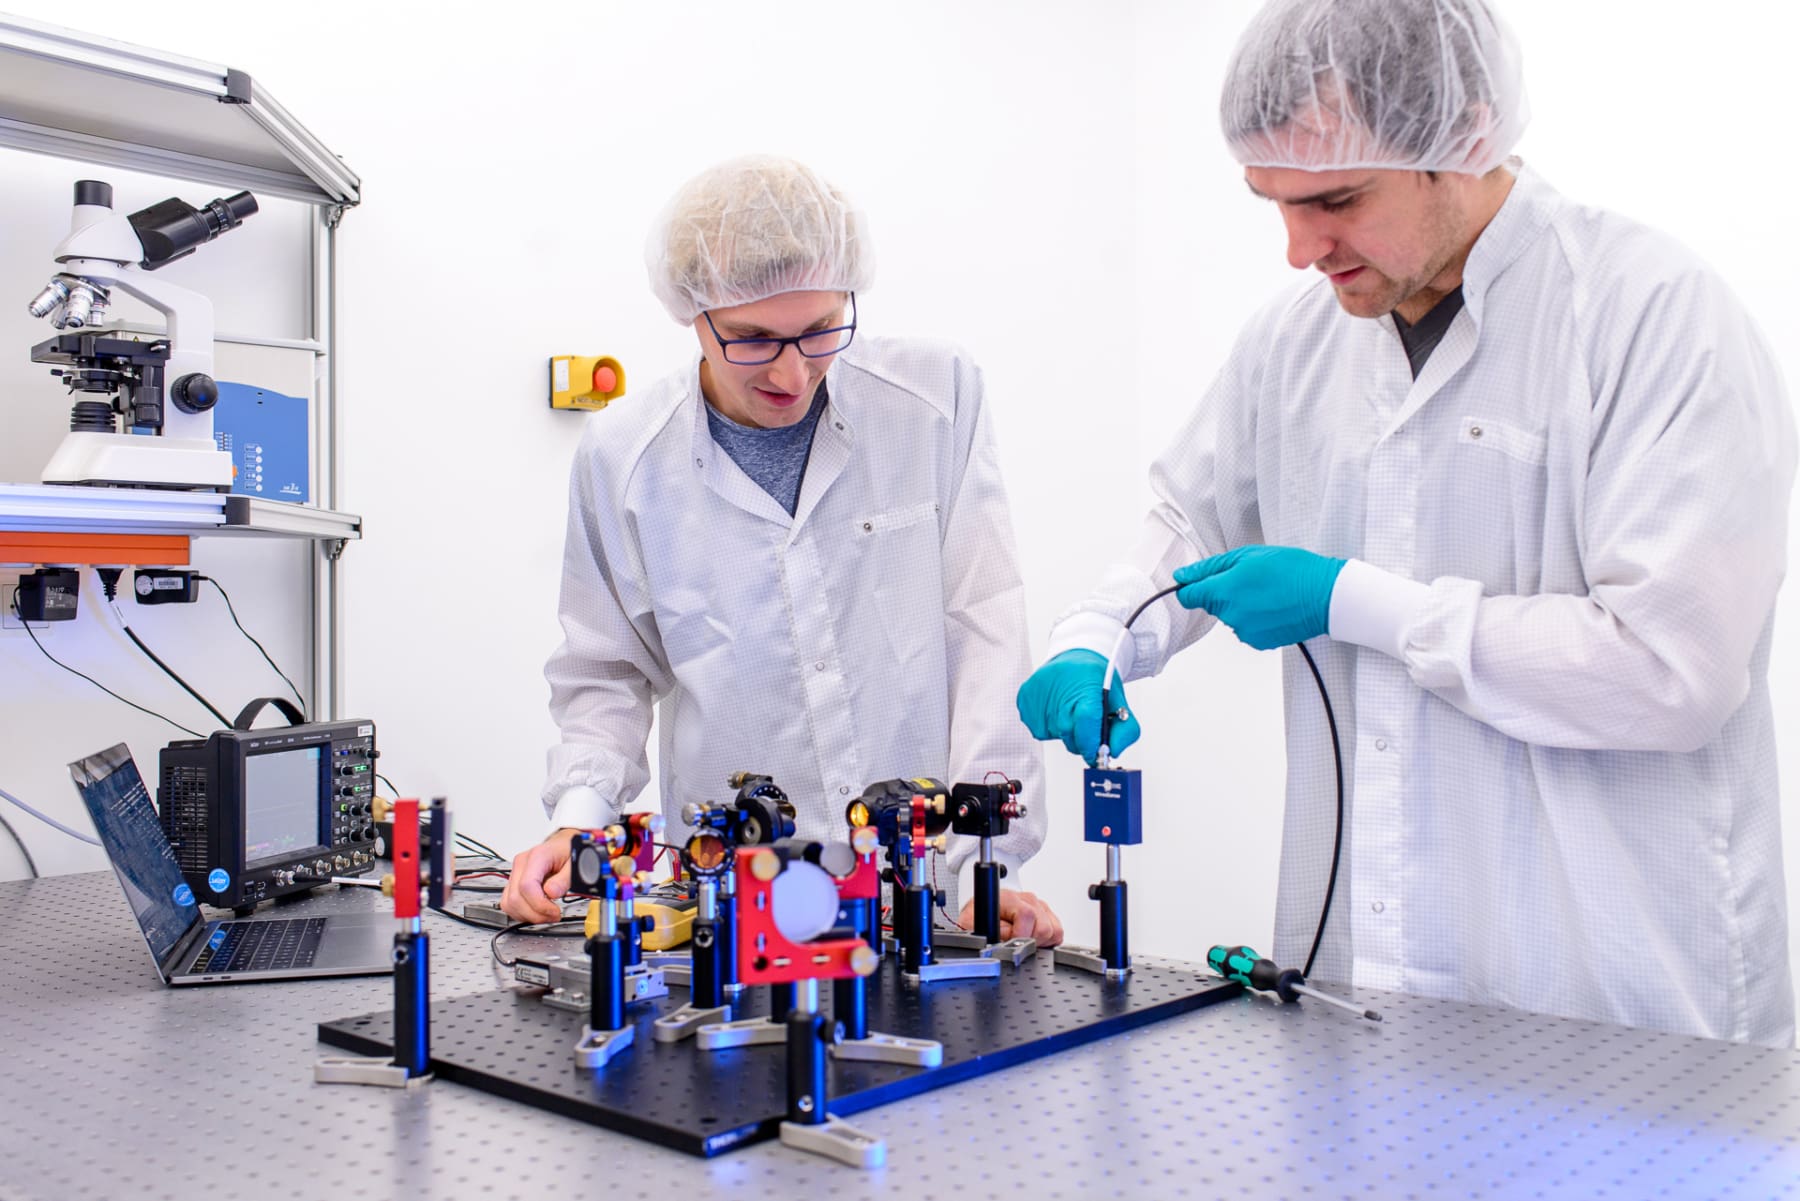 Die WiredSense-Gründer Matthias Budden und Thomas Gebert bei der Arbeit im Labor.